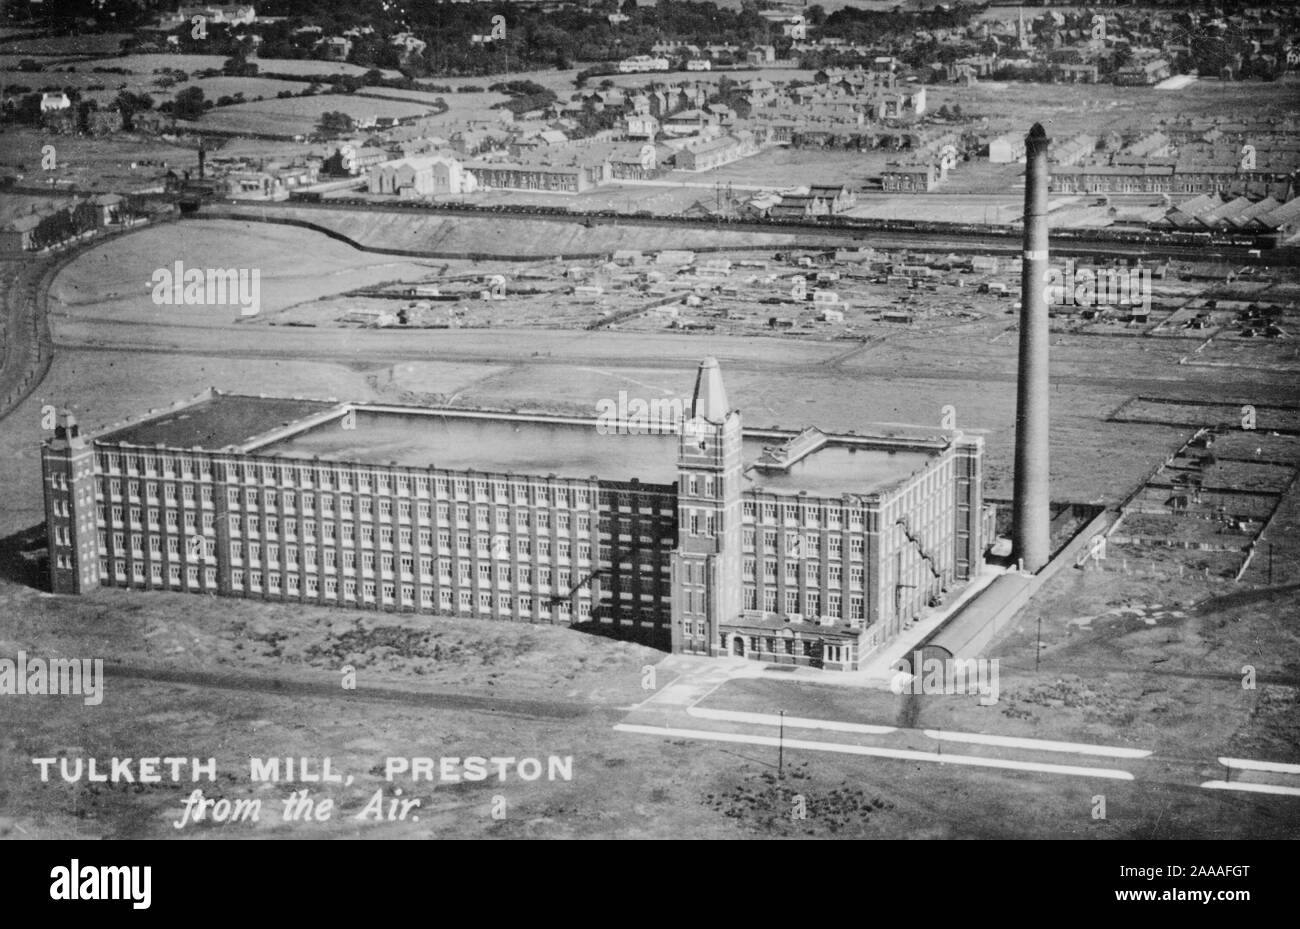 Tulketh Mill, Preston, Lancashire, England, Aerial View, alte Postkarte. Stockfoto